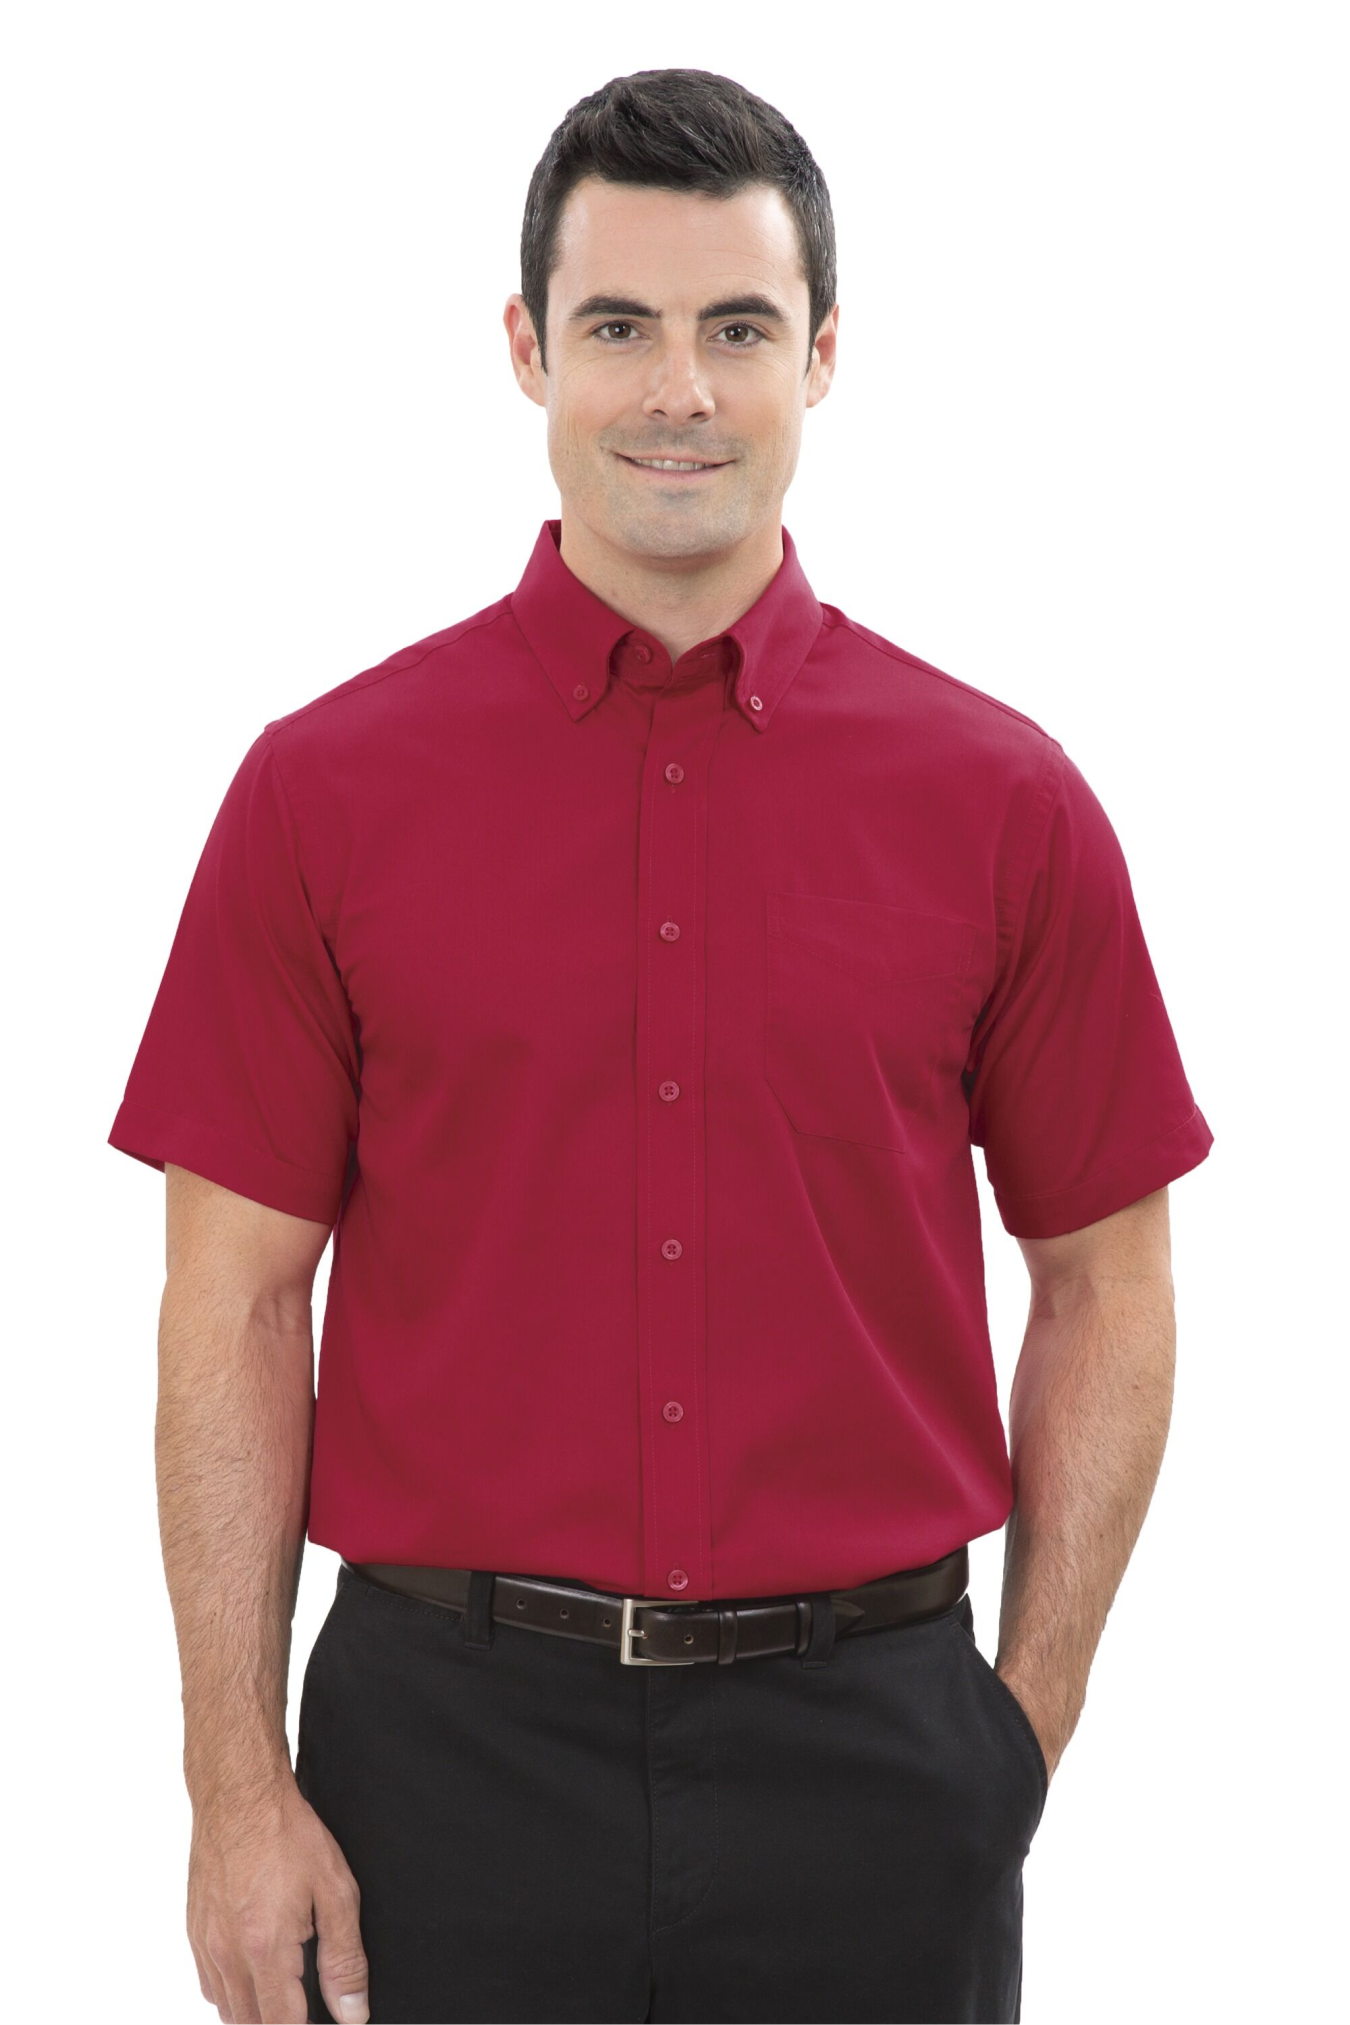 Model Adult Dress Shirt - Short Sleeve - D6021